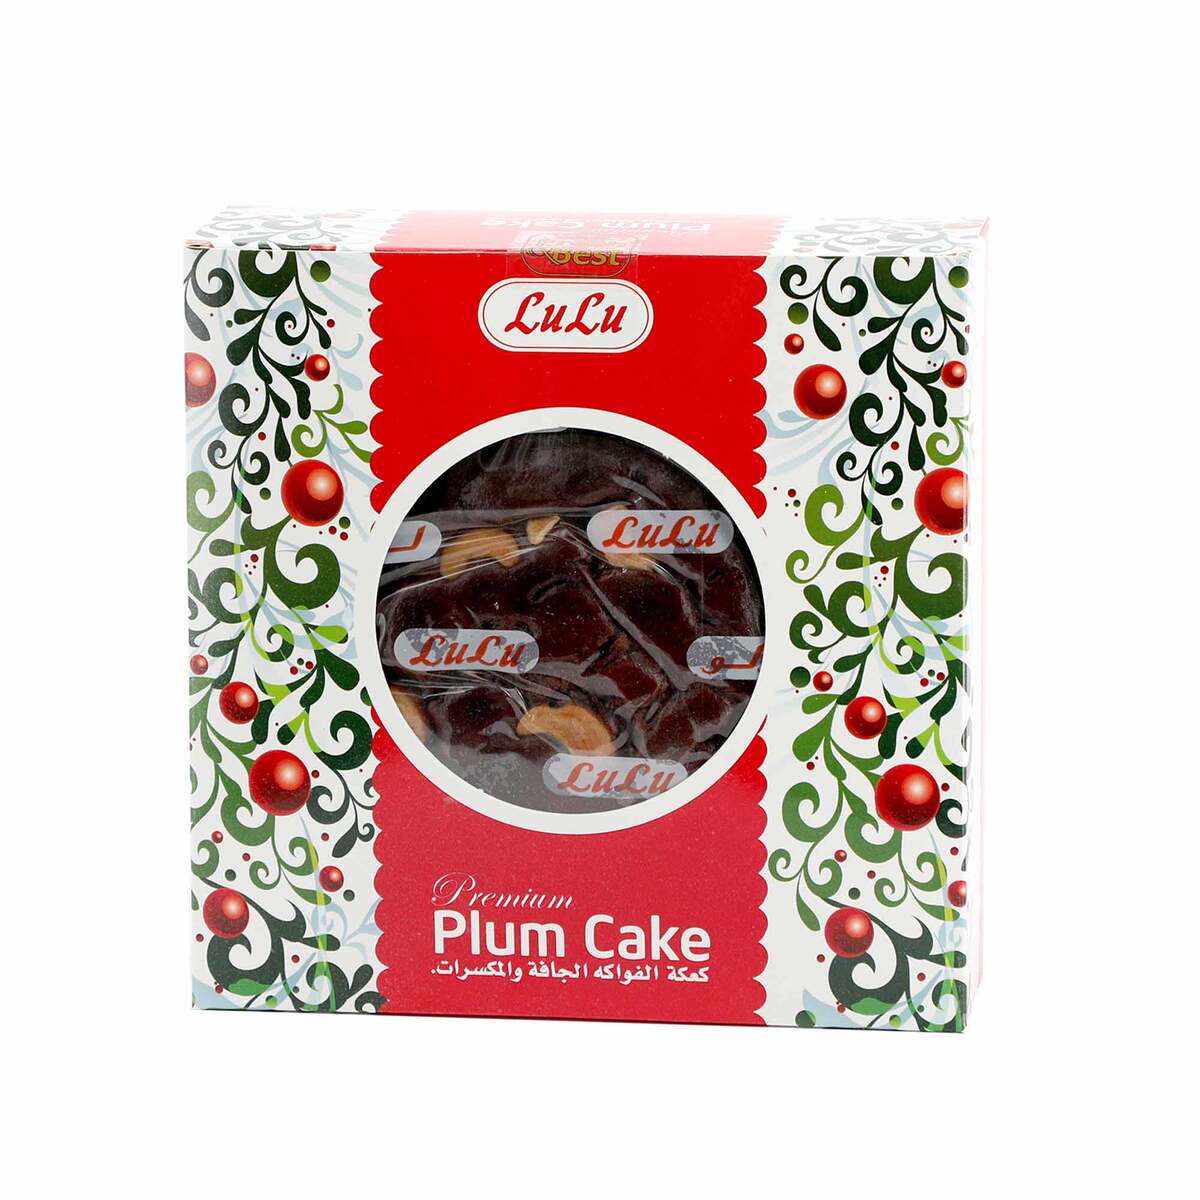 Xmas Plum Cake Small 600 g